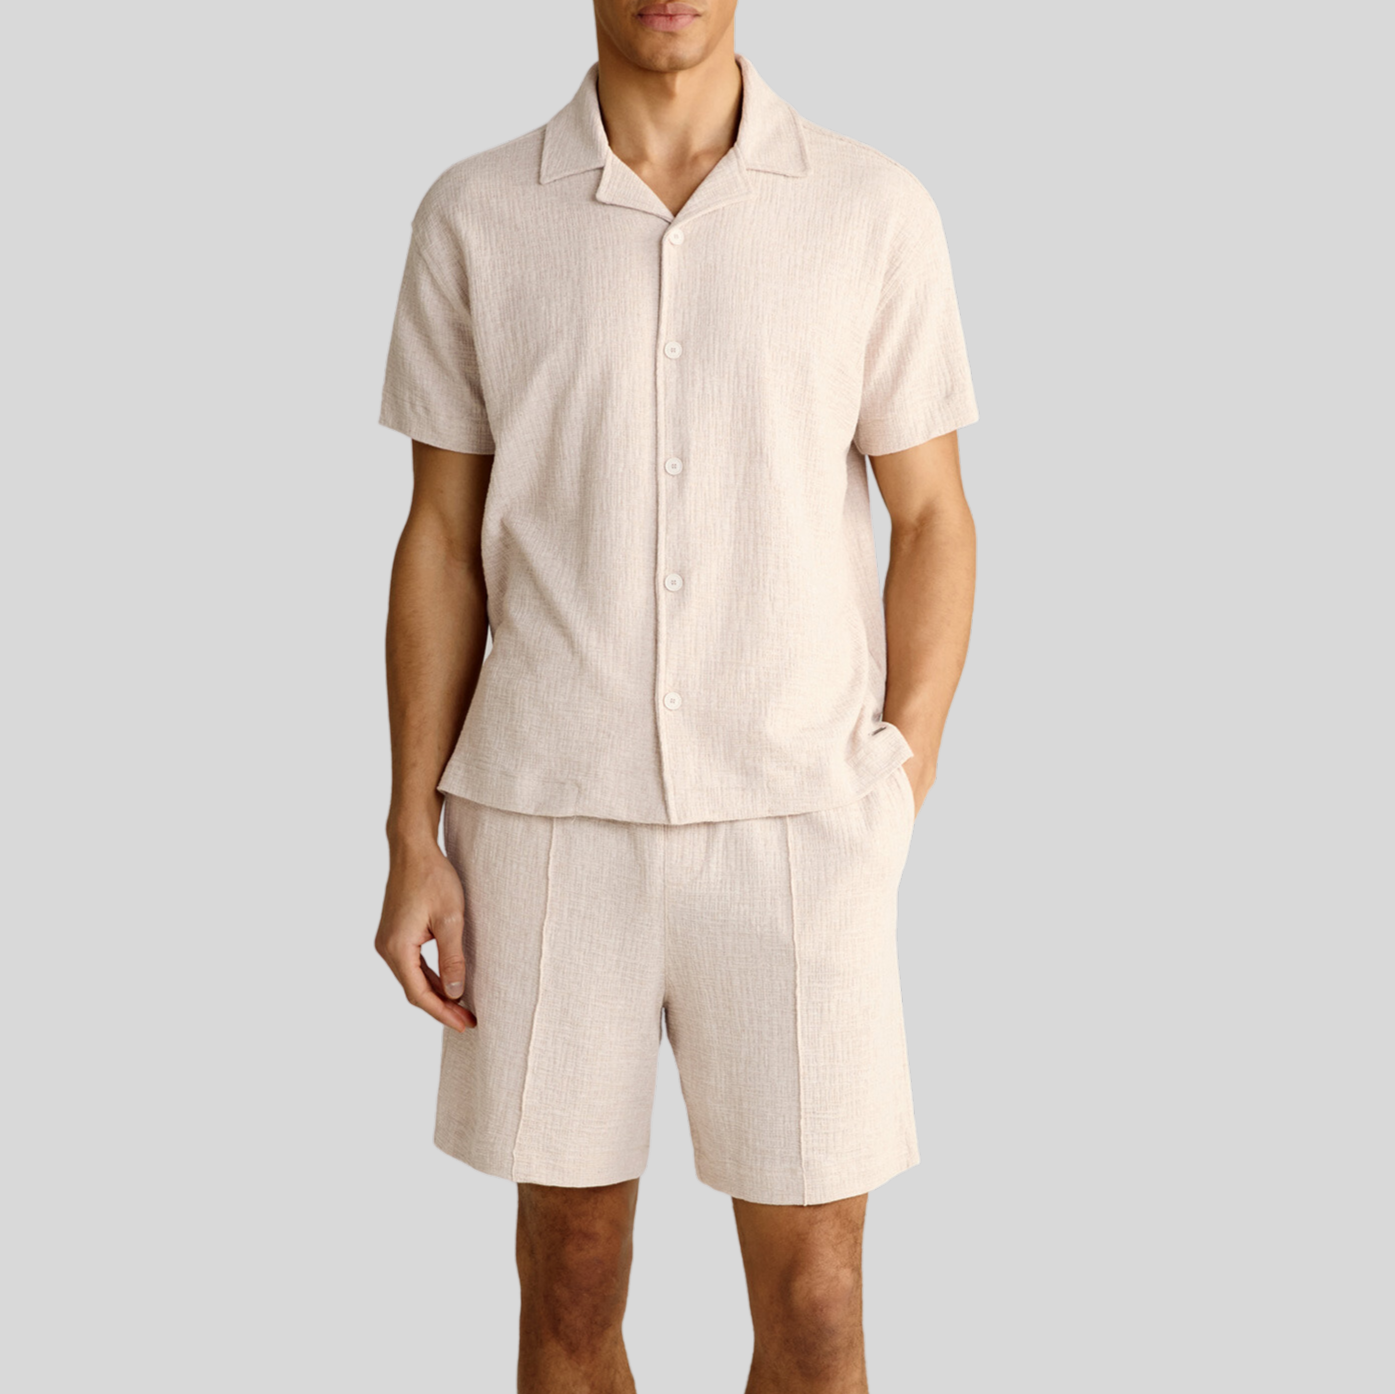 Gotstyle Fashion - Joop! Collar Shirts Structured Cotton Blend Shirt - Beige